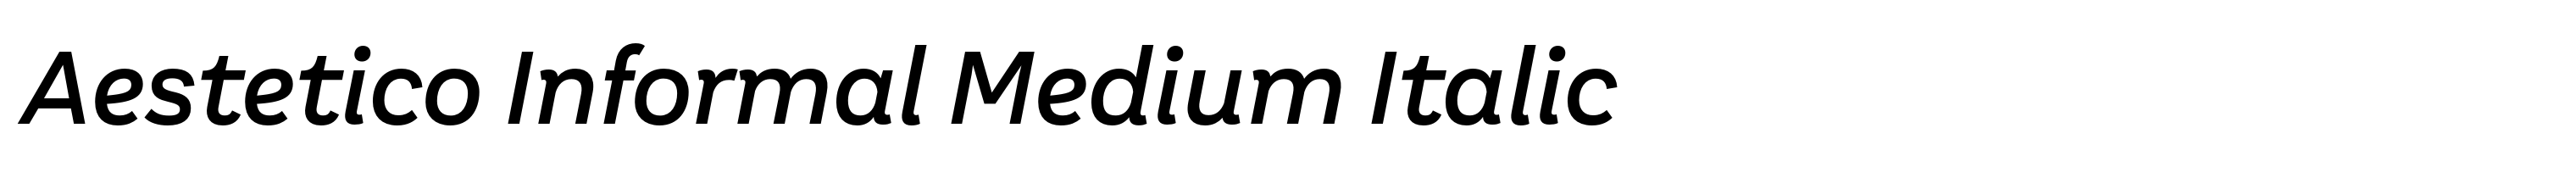 Aestetico Informal Medium Italic